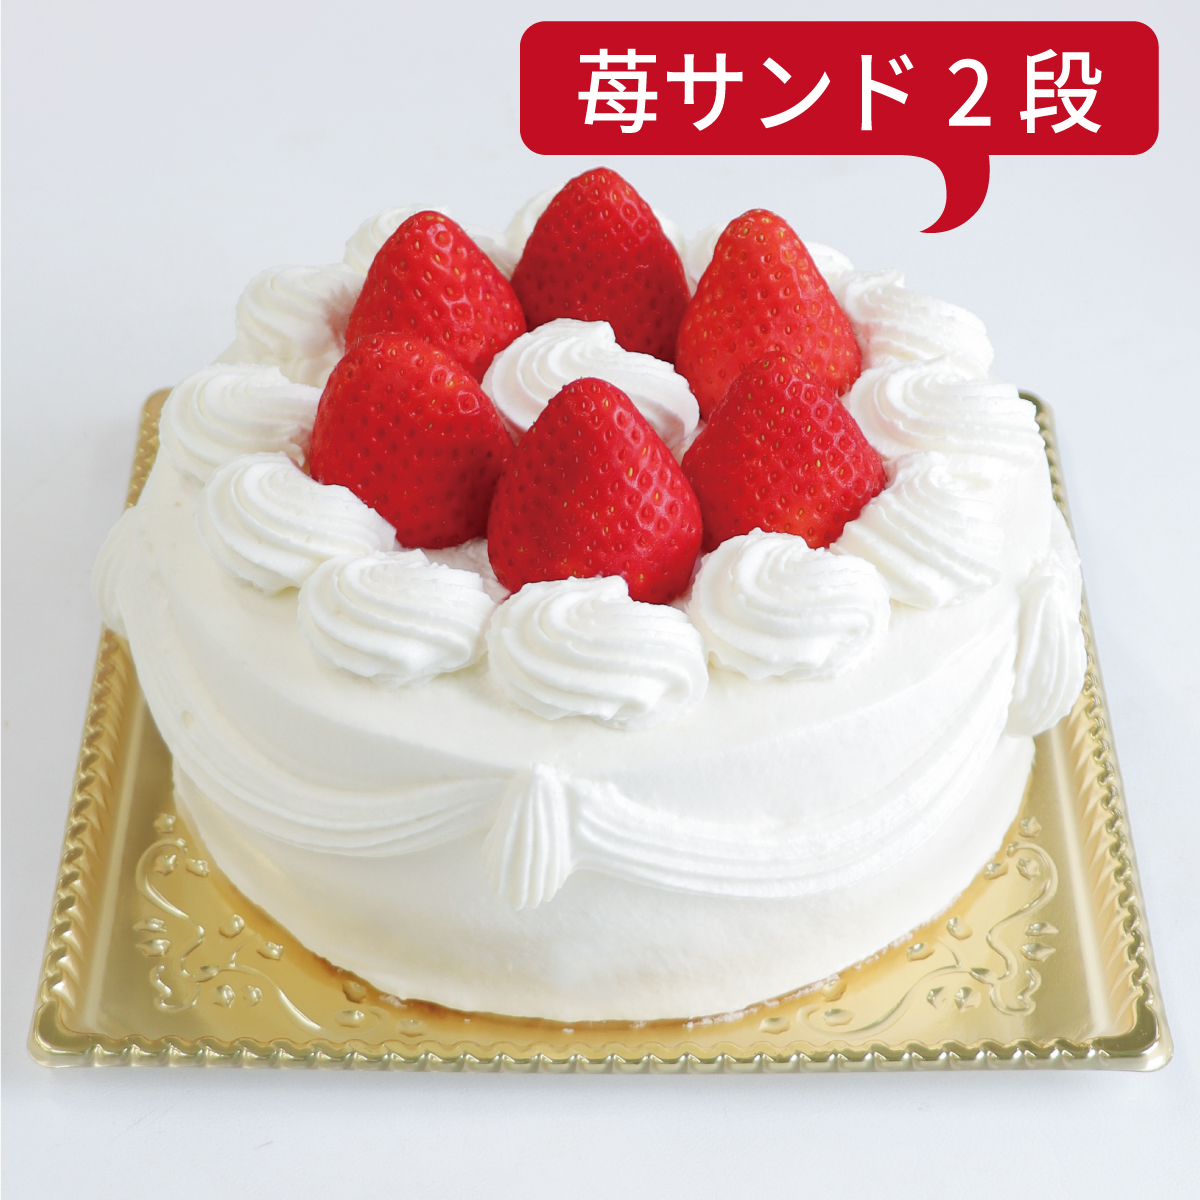 【ダブル】いちごデコレーションケーキ<15cm>